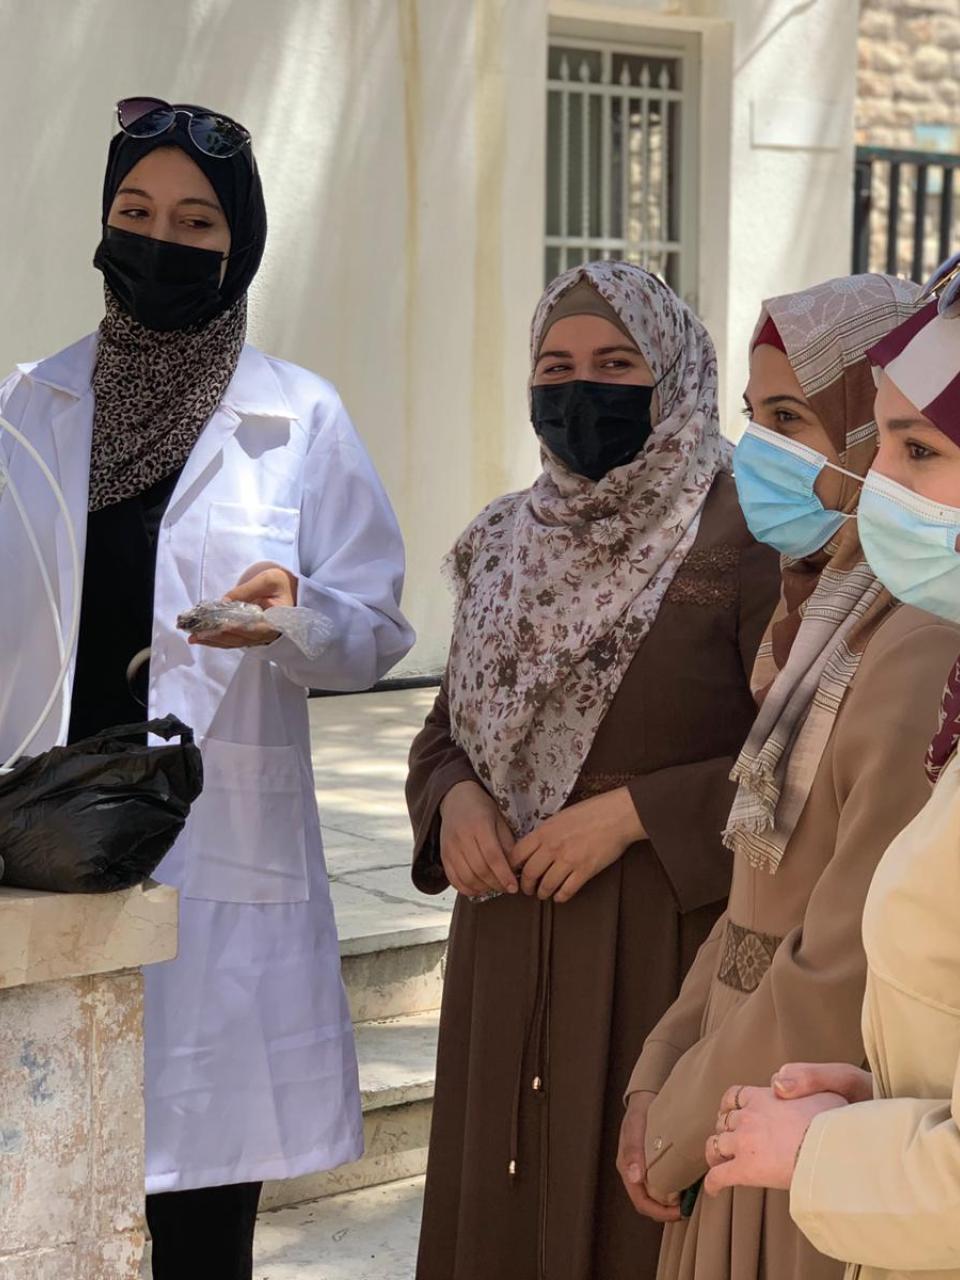 El equipo de EnviCoPal presenta sus filtros de agua a los formadores durante una visita a Palestina. Cewas